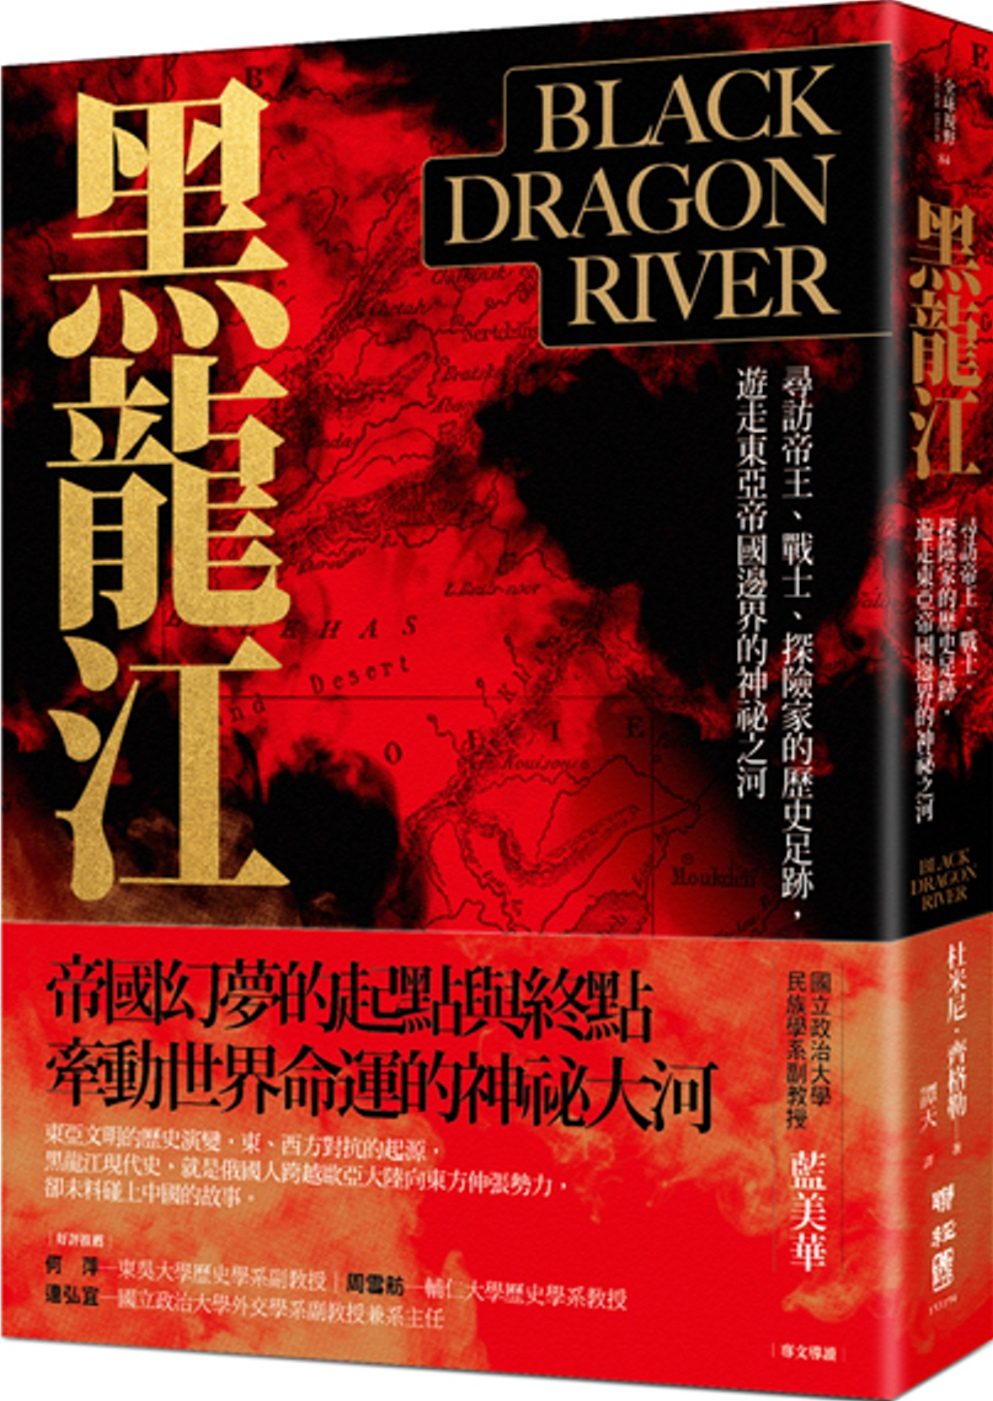 黑龍江：尋訪帝王、戰士、探險家的歷史足跡，遊走東亞帝國邊界的神祕之河